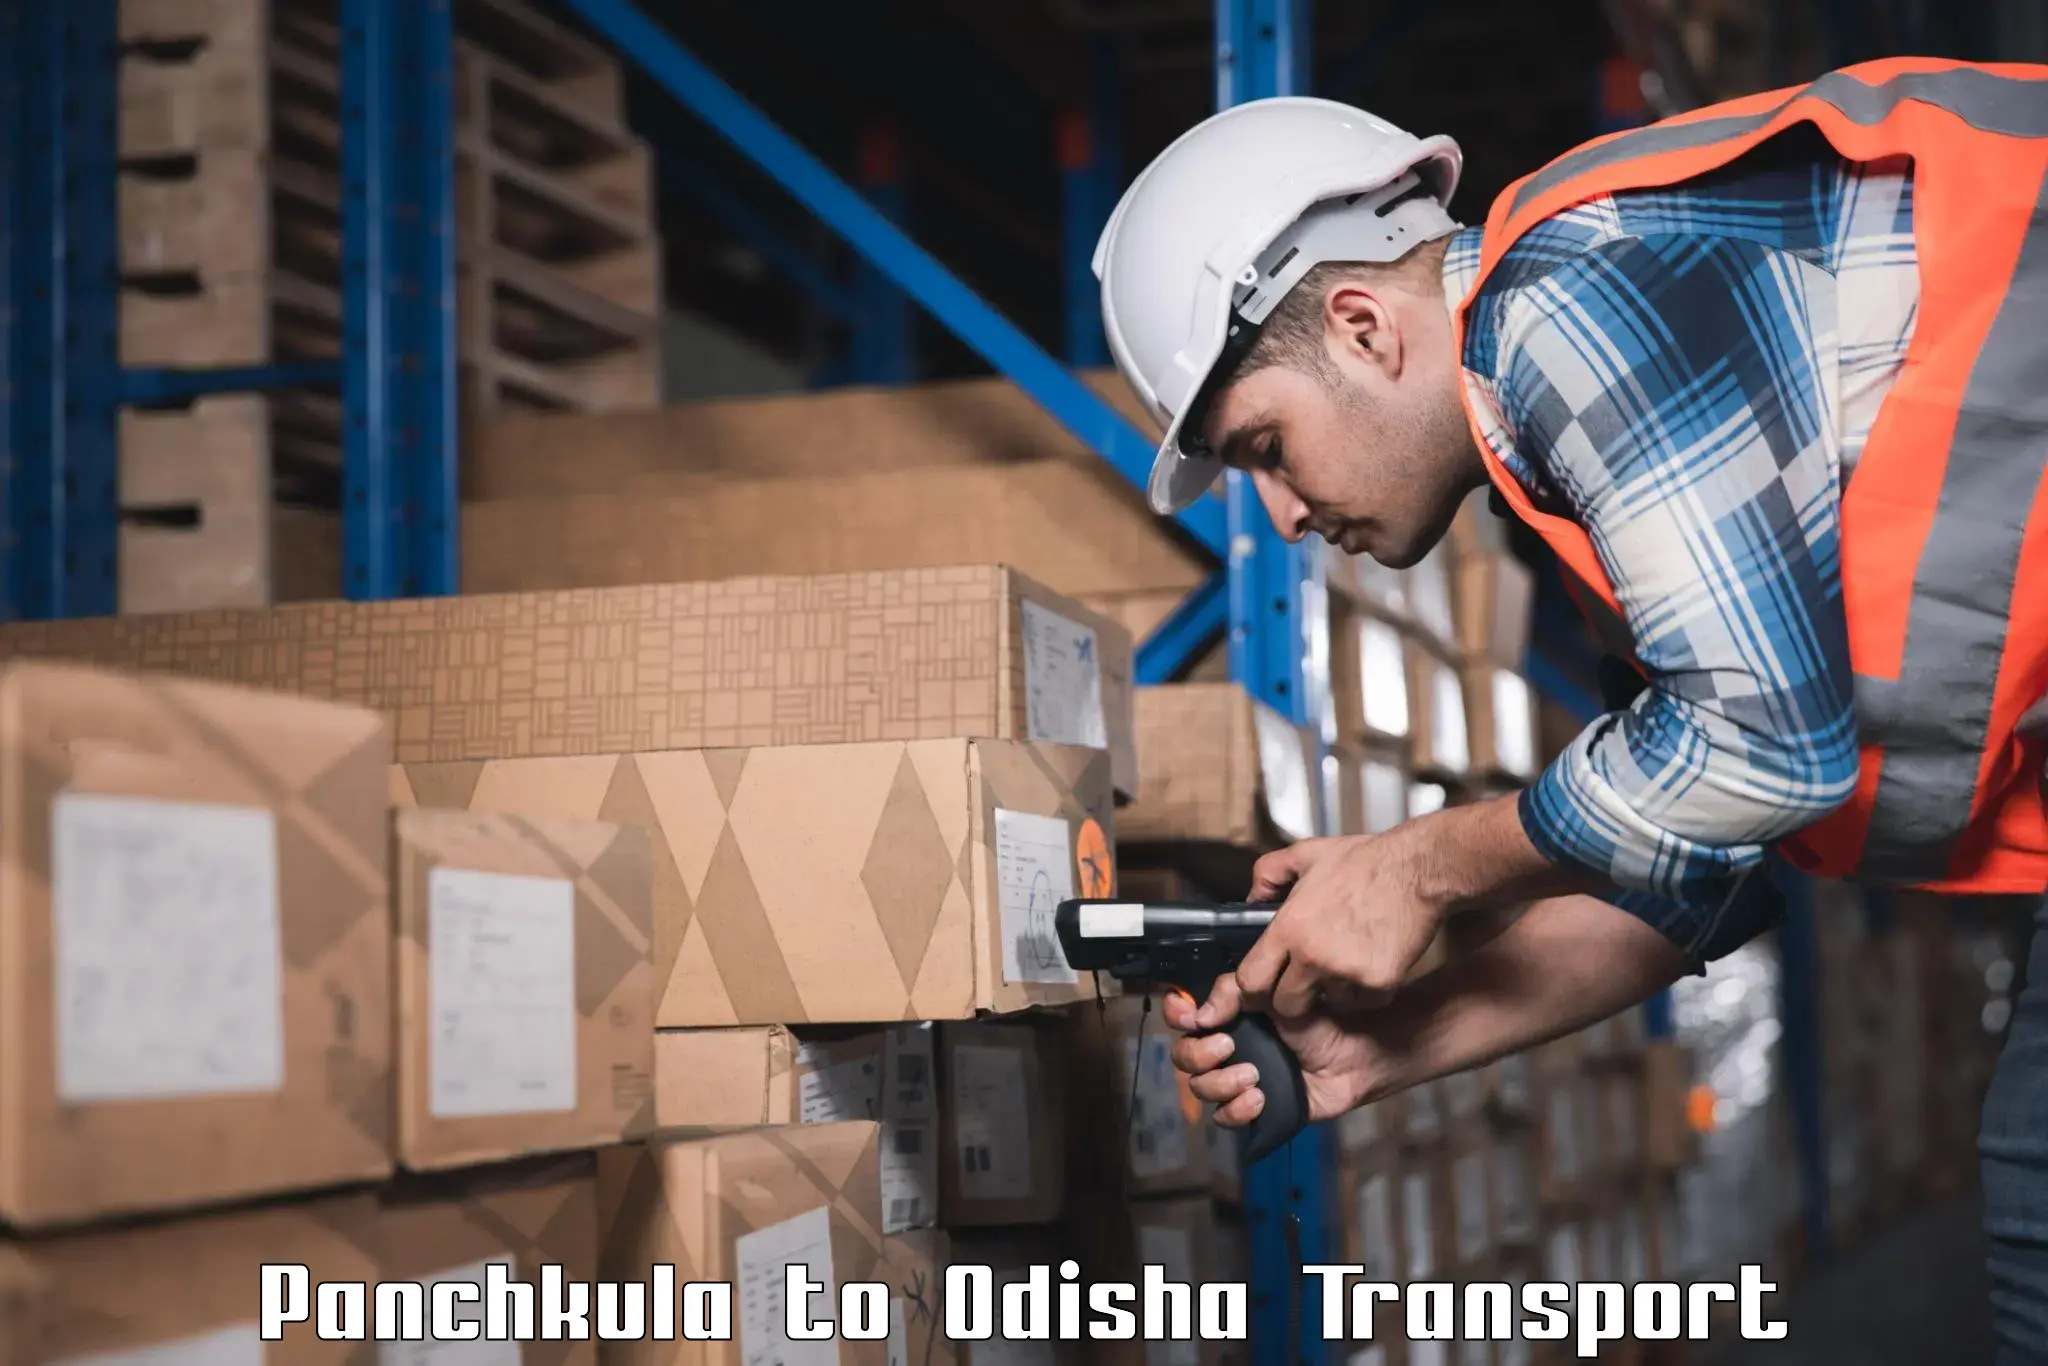 Online transport booking Panchkula to Sankerko